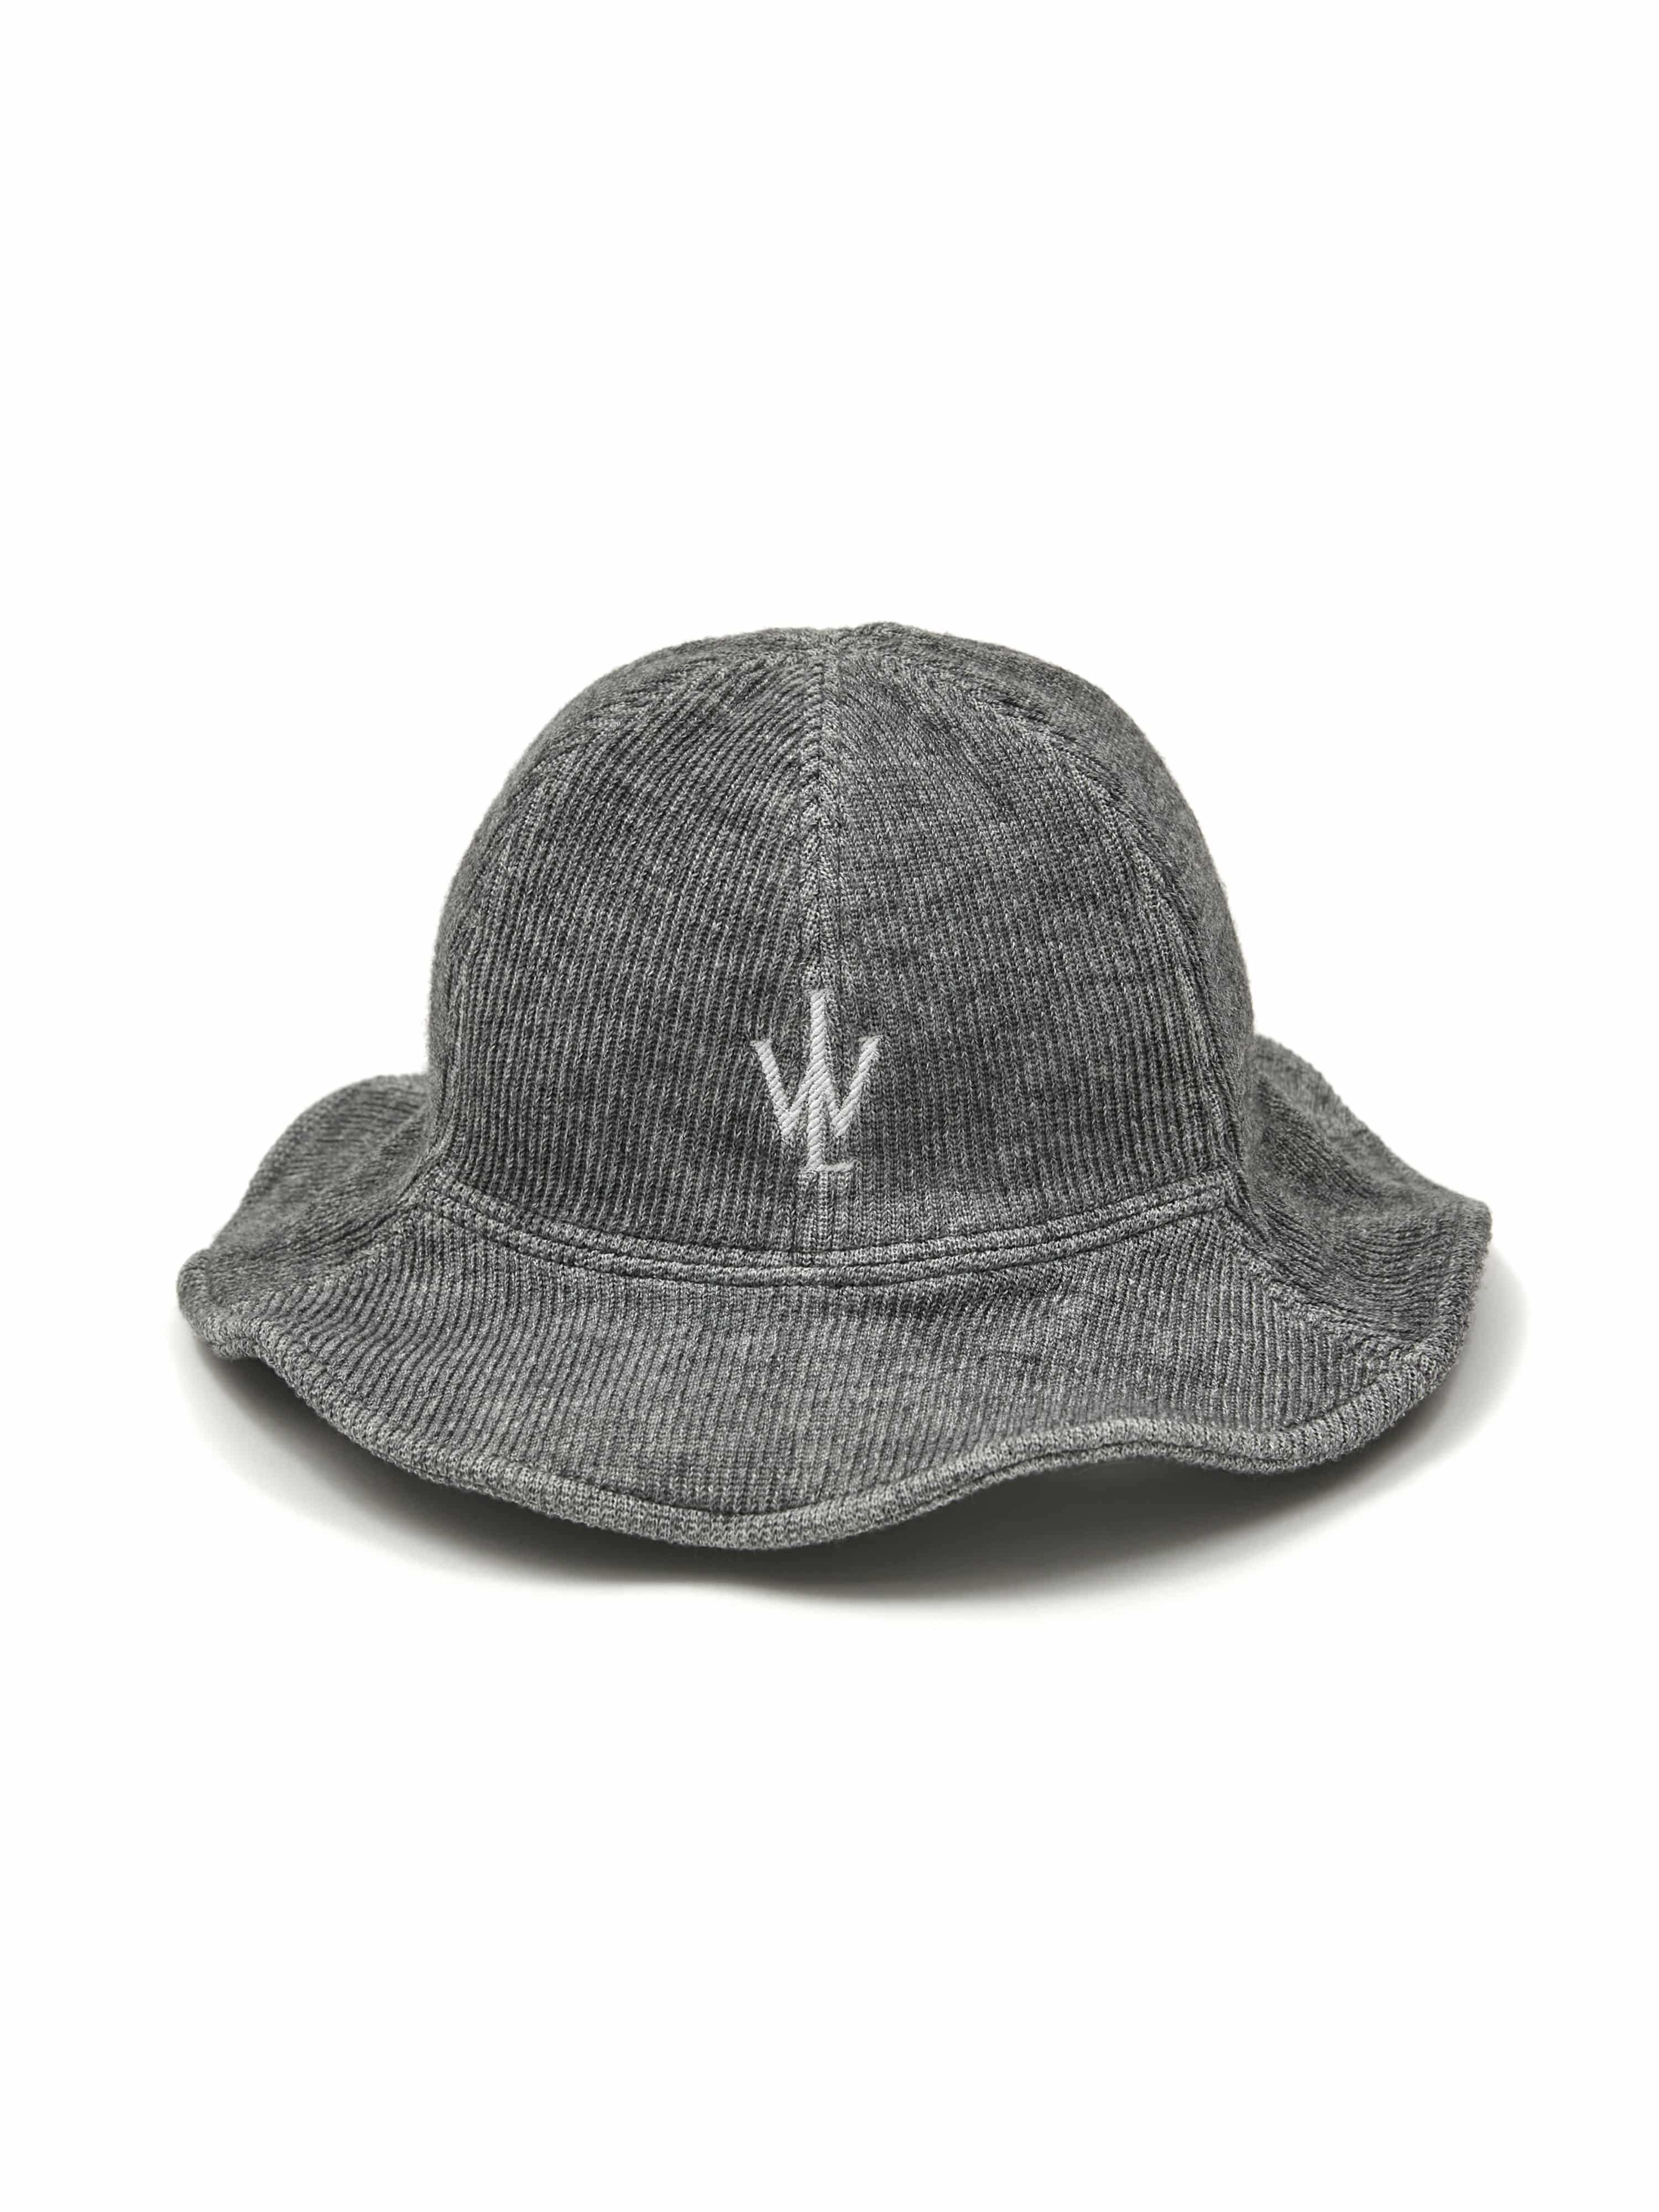 logo knit bucket hat gray - Likewize